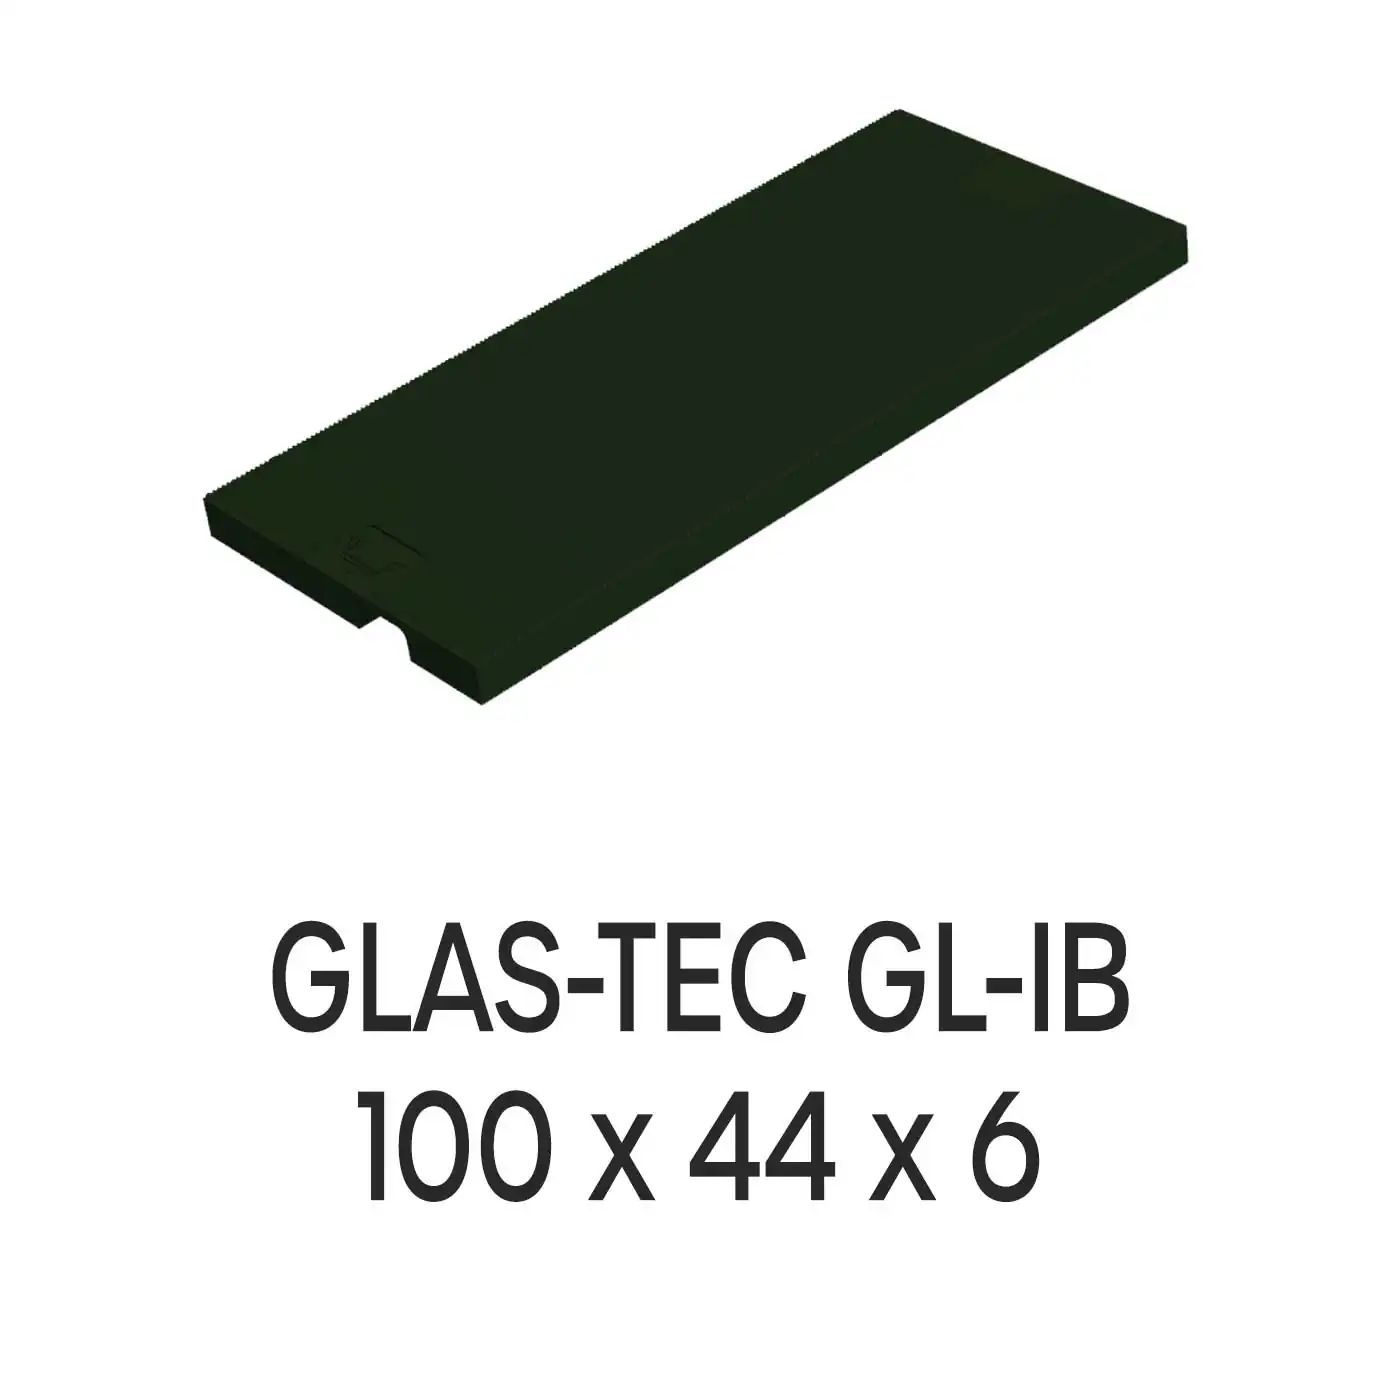 Roto Verglasungsklotz GLAS-TEC GL-IB, 100 x 44 x 6 mm, schwarz, 500 Stück